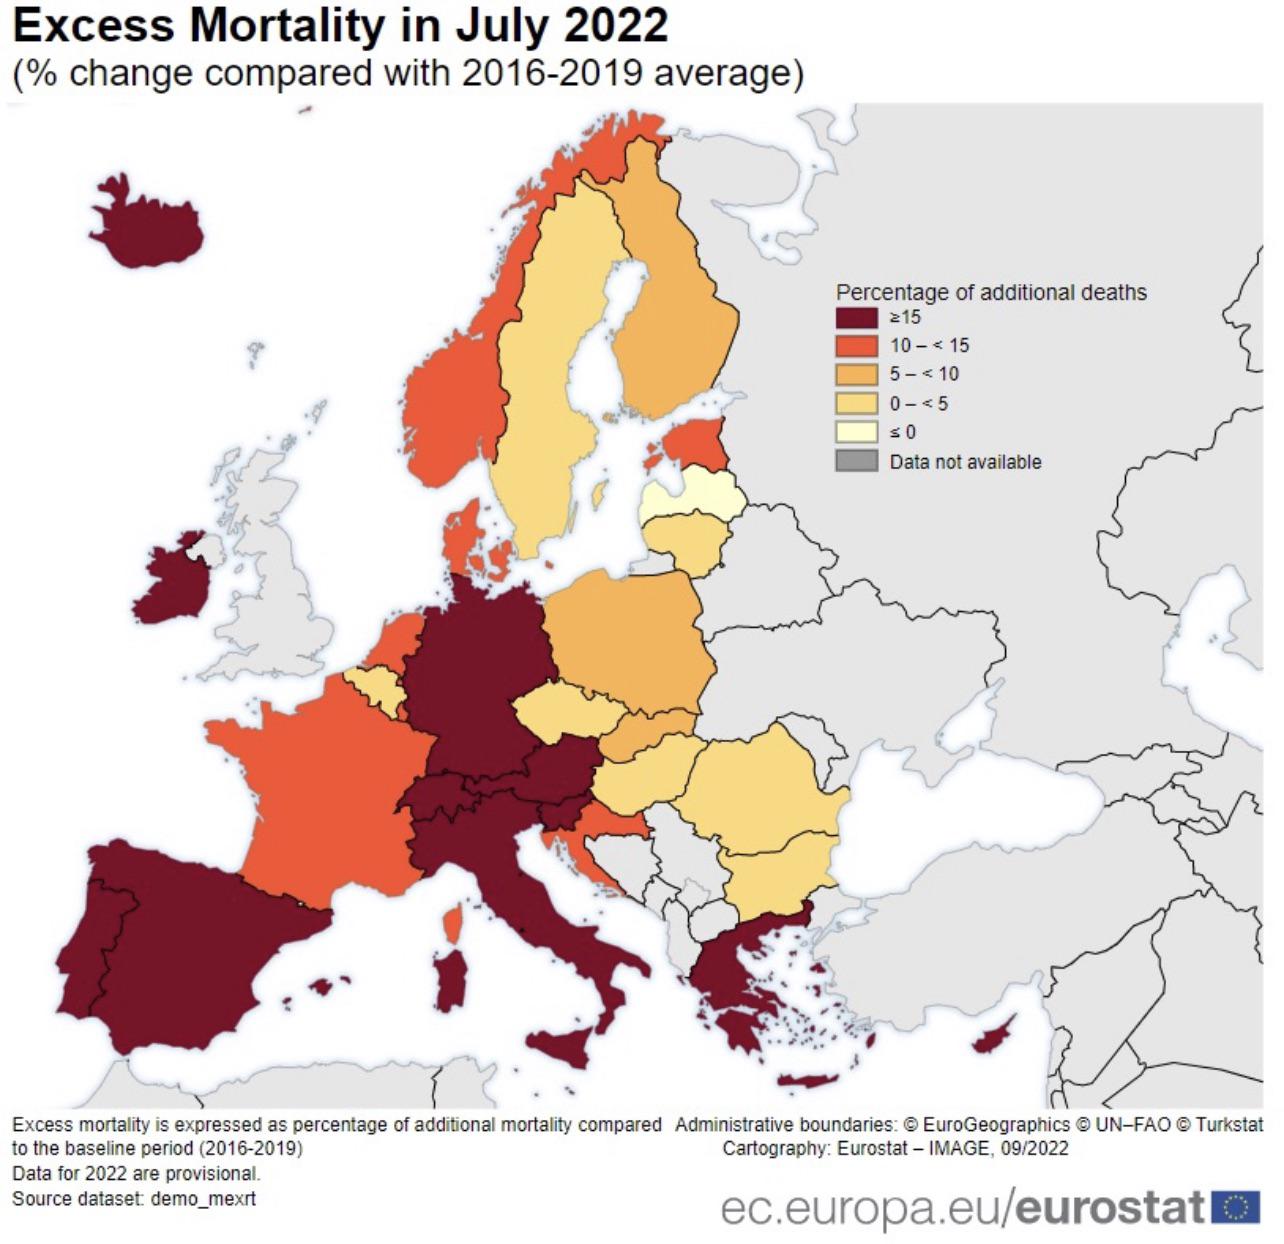 Śmiertelność w Europie w lipcu 2022 w porównaniu do średniej okresu 2016-2019